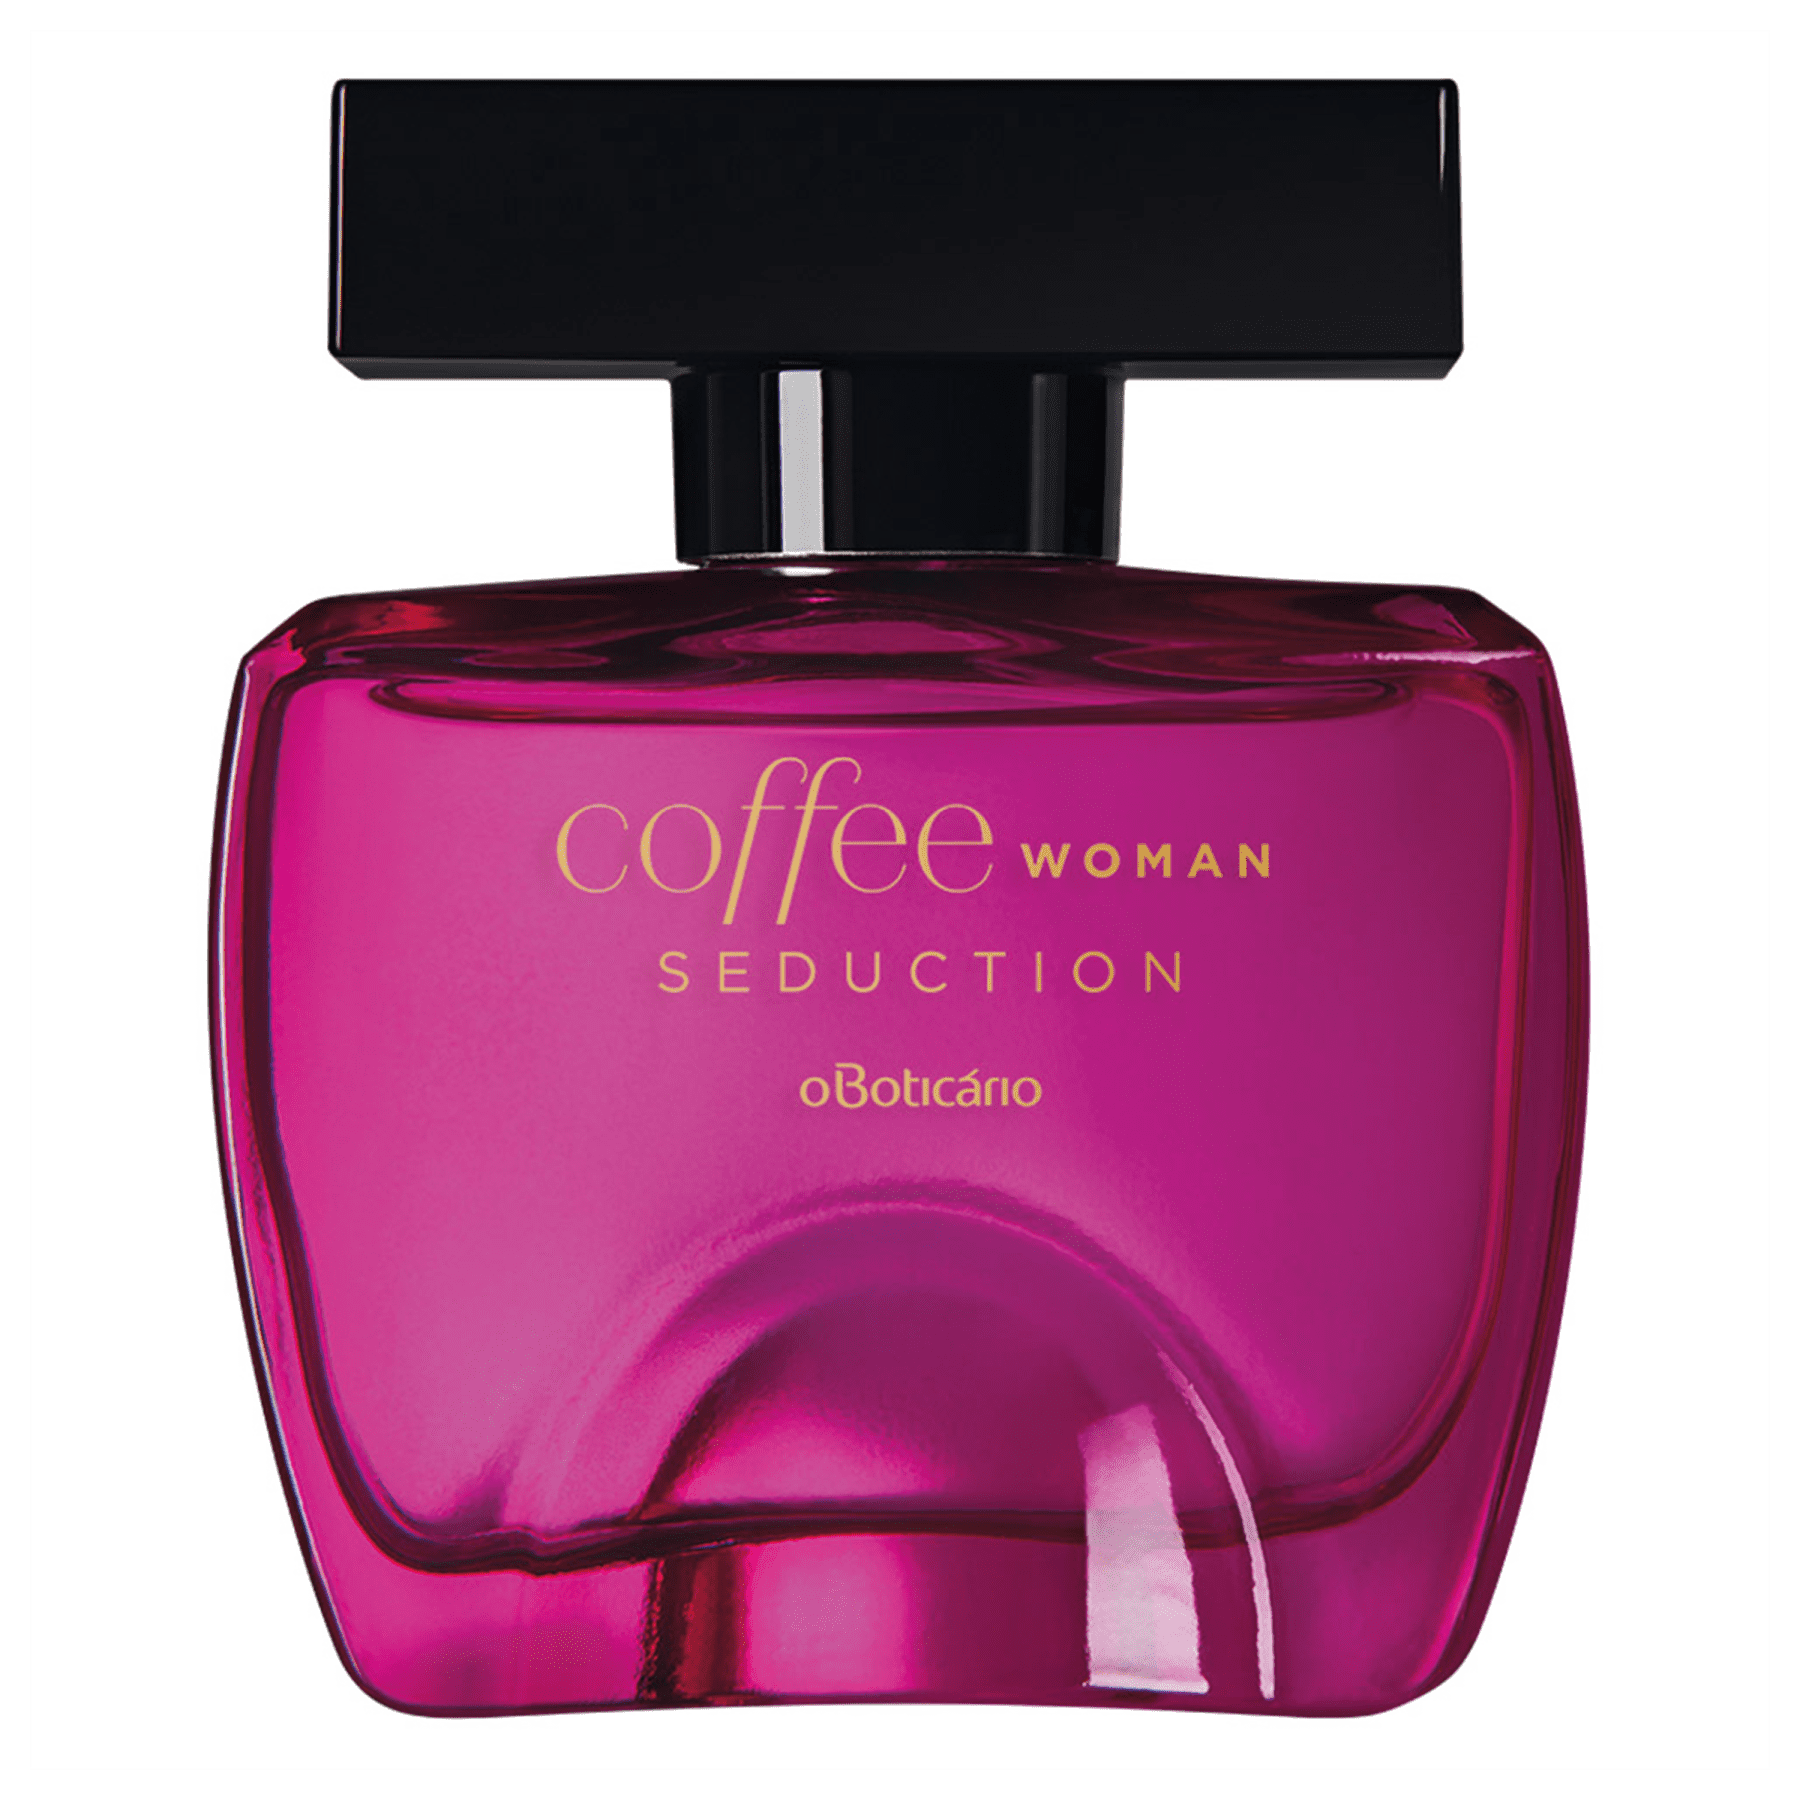 Dayse presentes - Coffee Duo Woman de O Boticário é um perfume Floral  Frutado Gourmet !!!